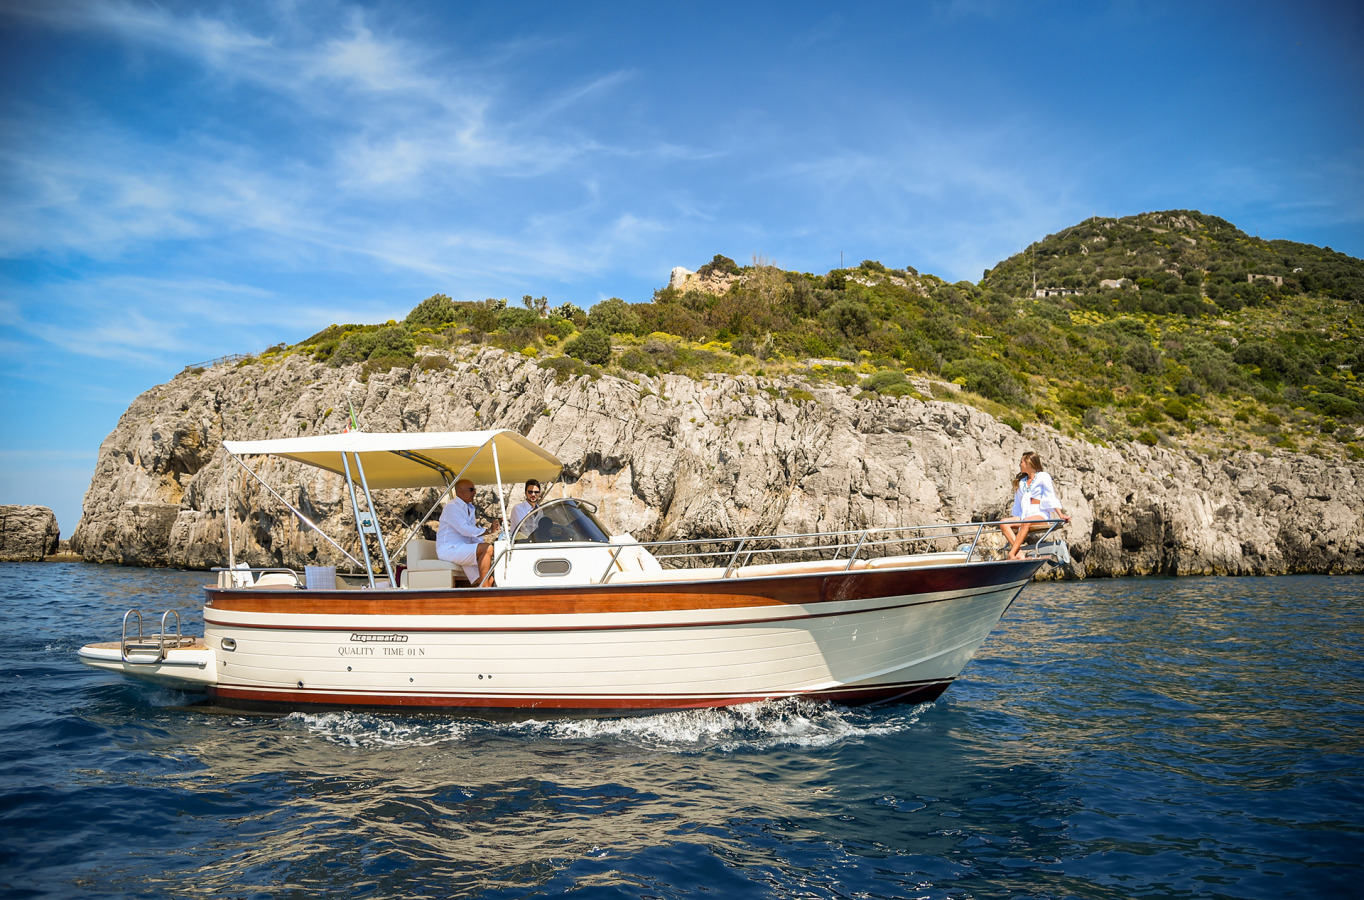 boat tour of amalfi coast